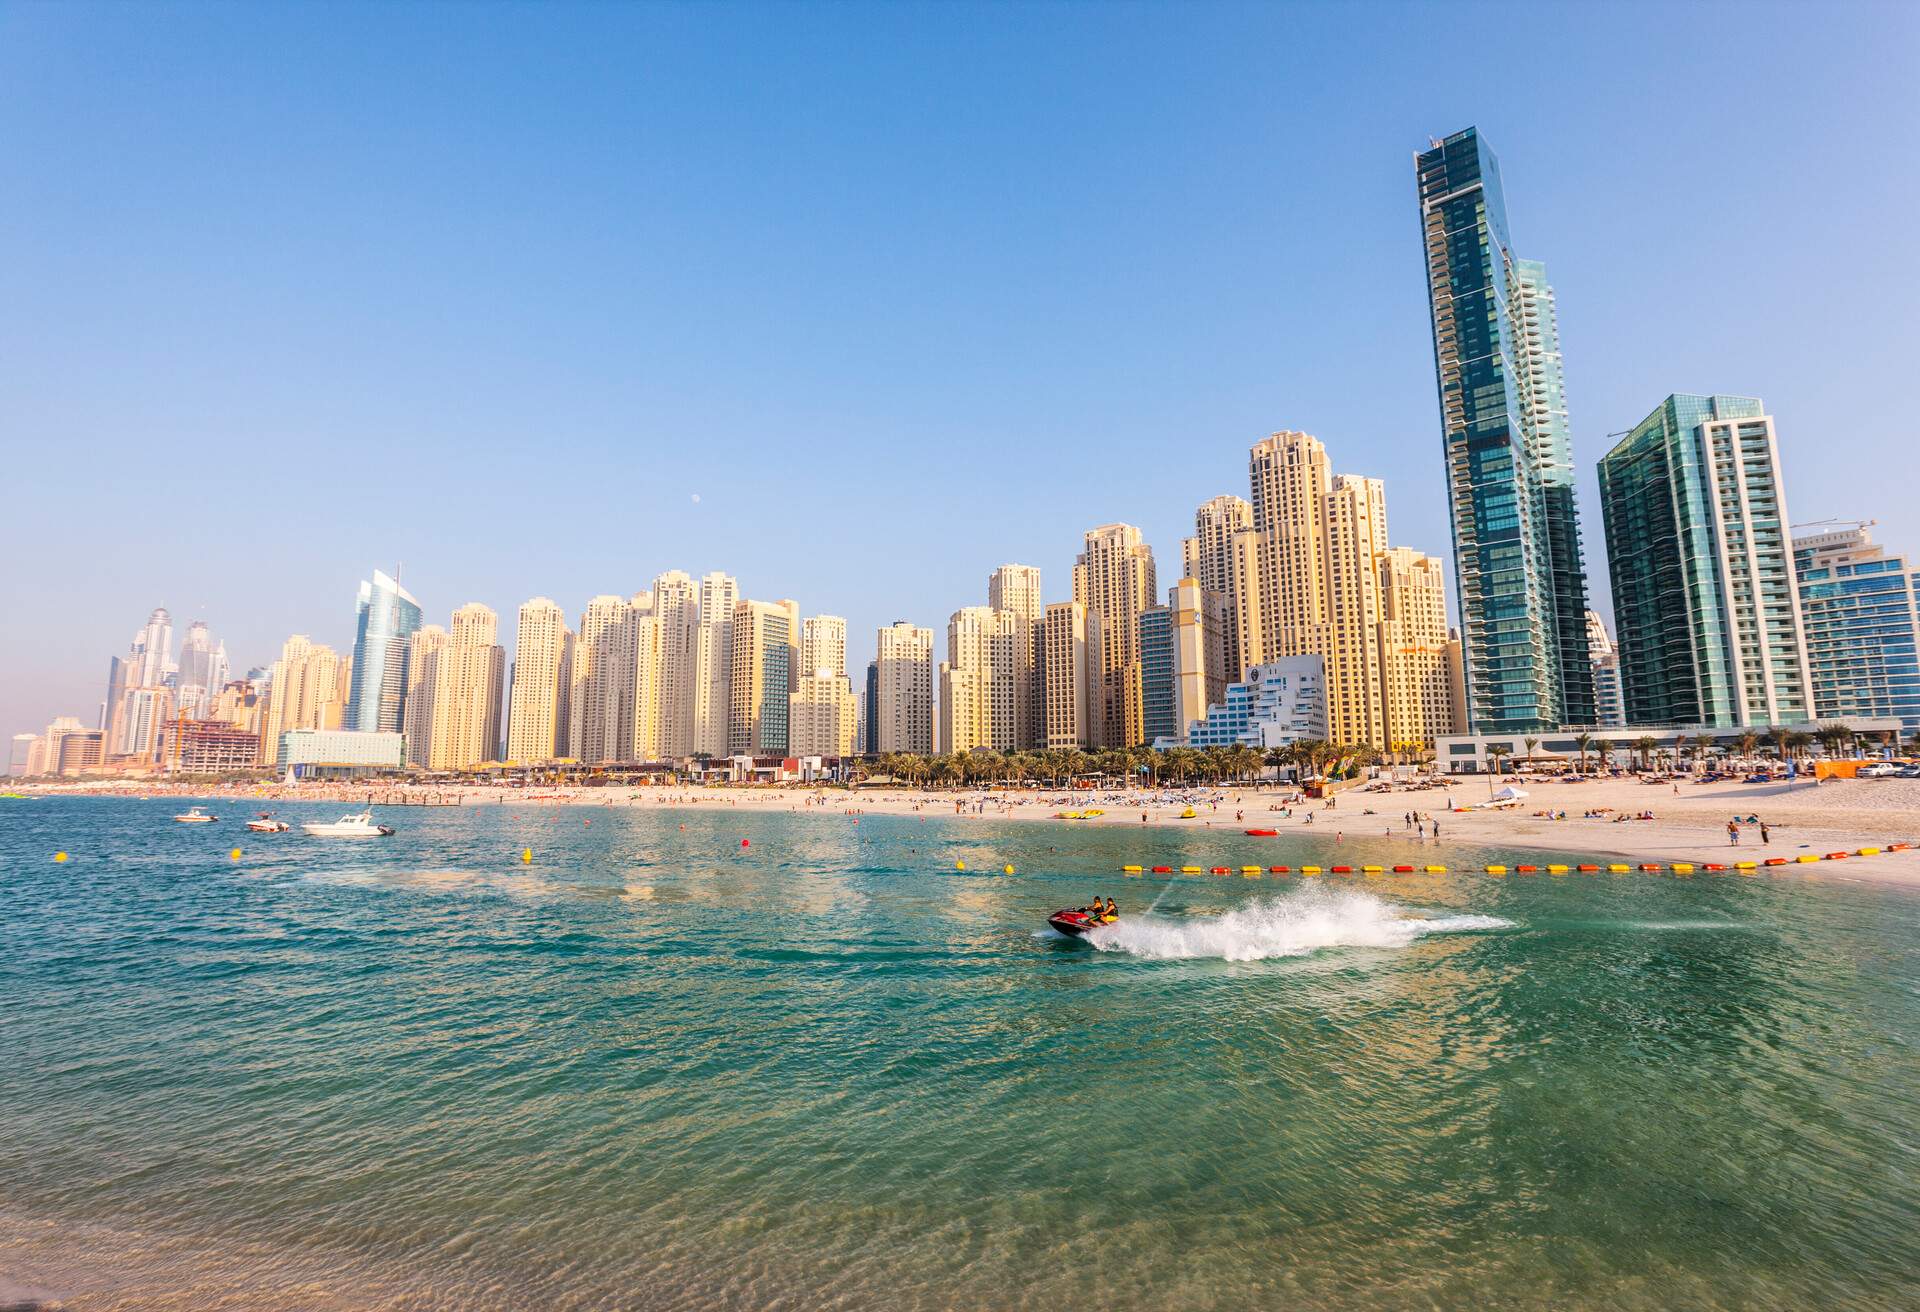 View to Dubai JBR beach and modern buildings in Dubai Marina district